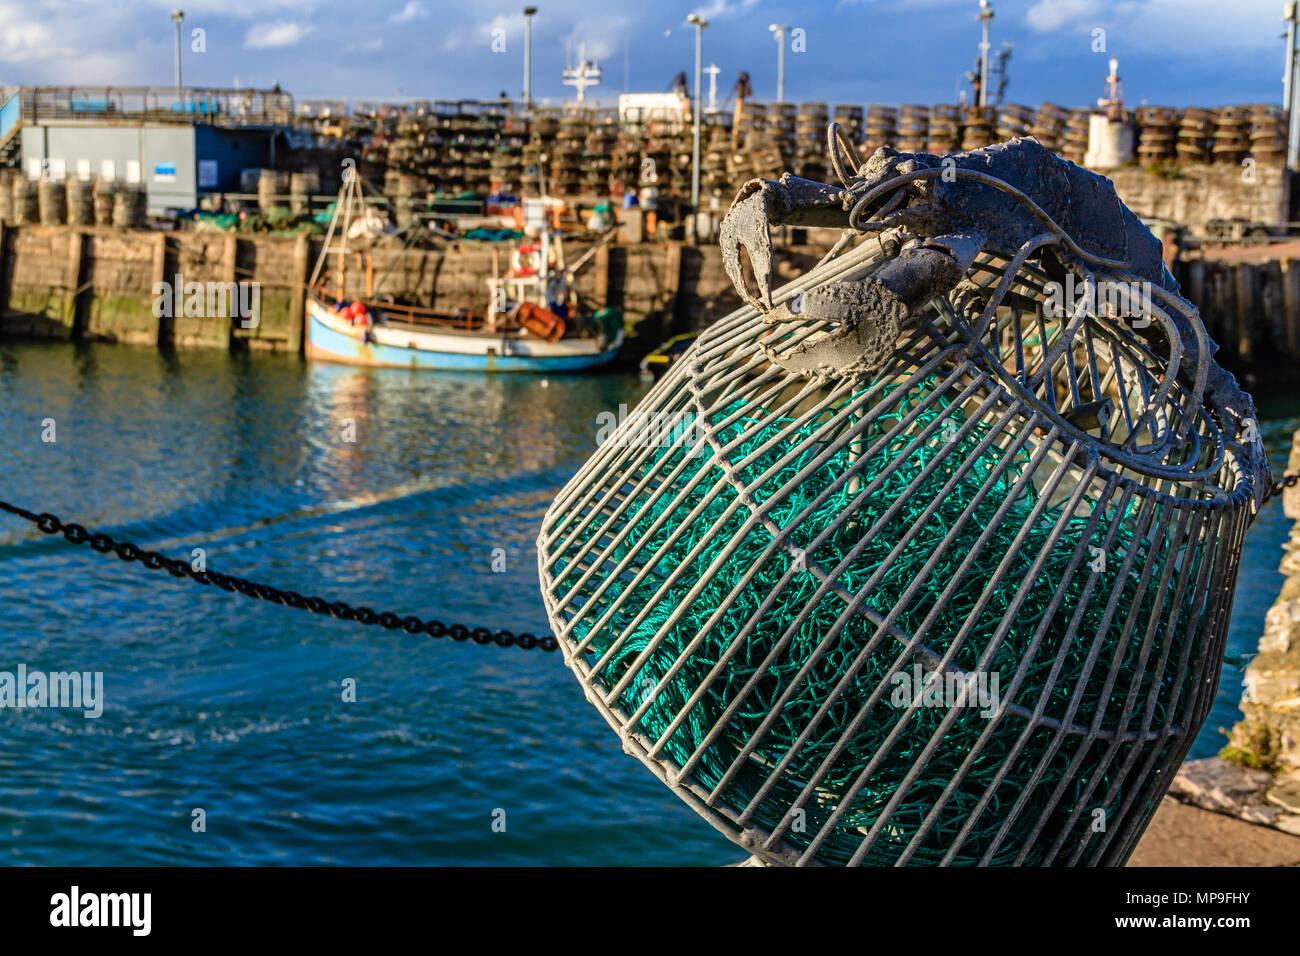 Lobster Pot scultura accanto a Brixham Harbour, con la barca da pesca e real lobster pot in background. Brixham, Devon. Marzo 2018. Foto Stock